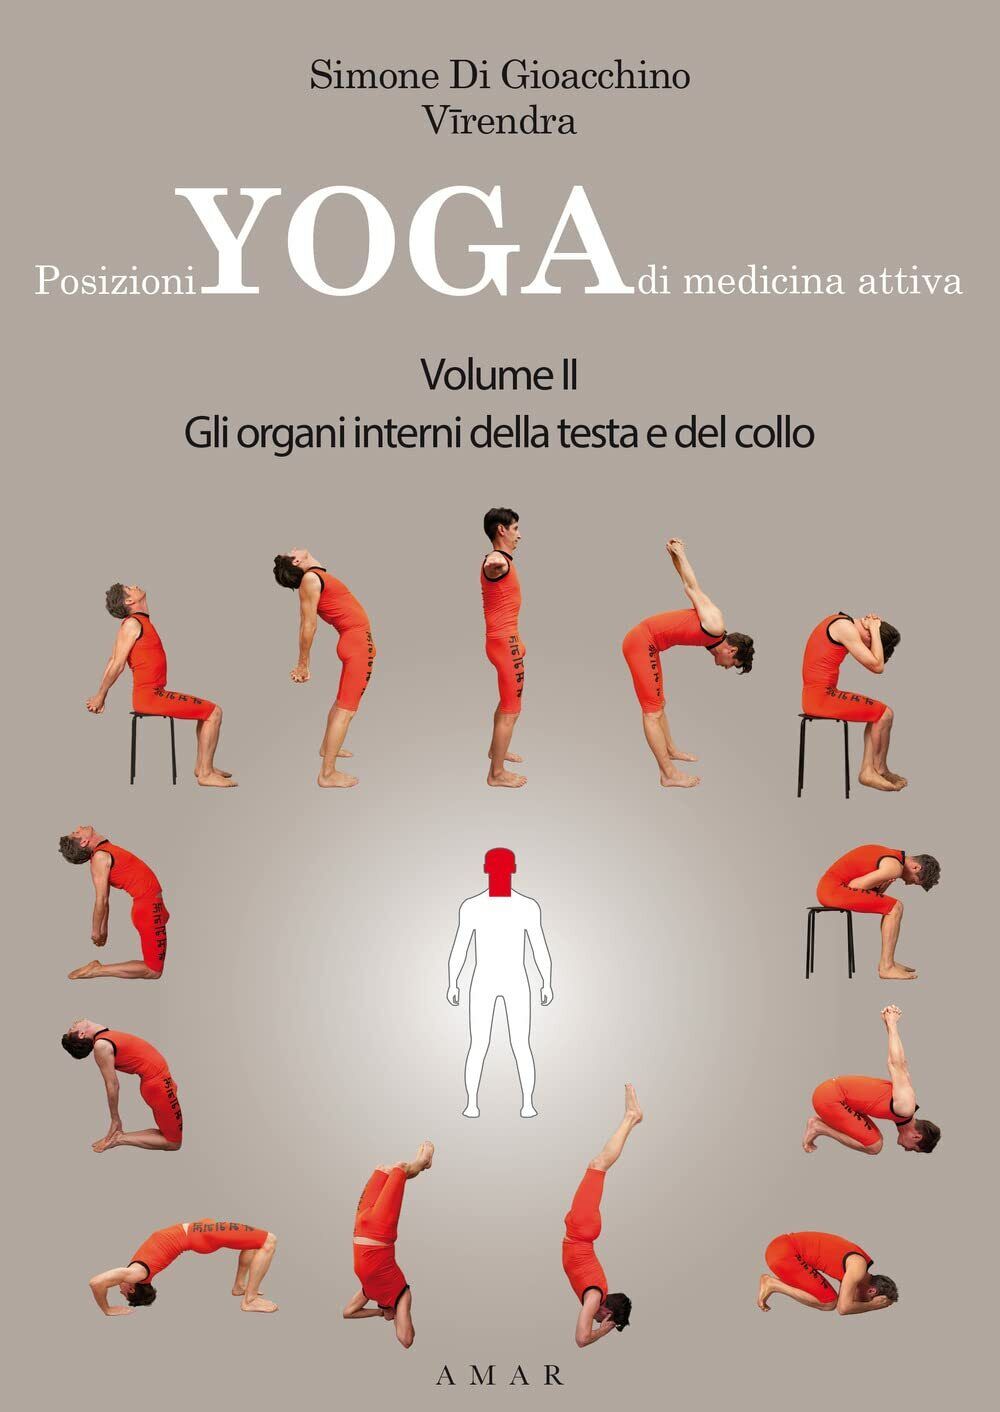 Posizioni yoga di medicina attiva vol.2 - Di Gioacchino Simone Viendra, 2022